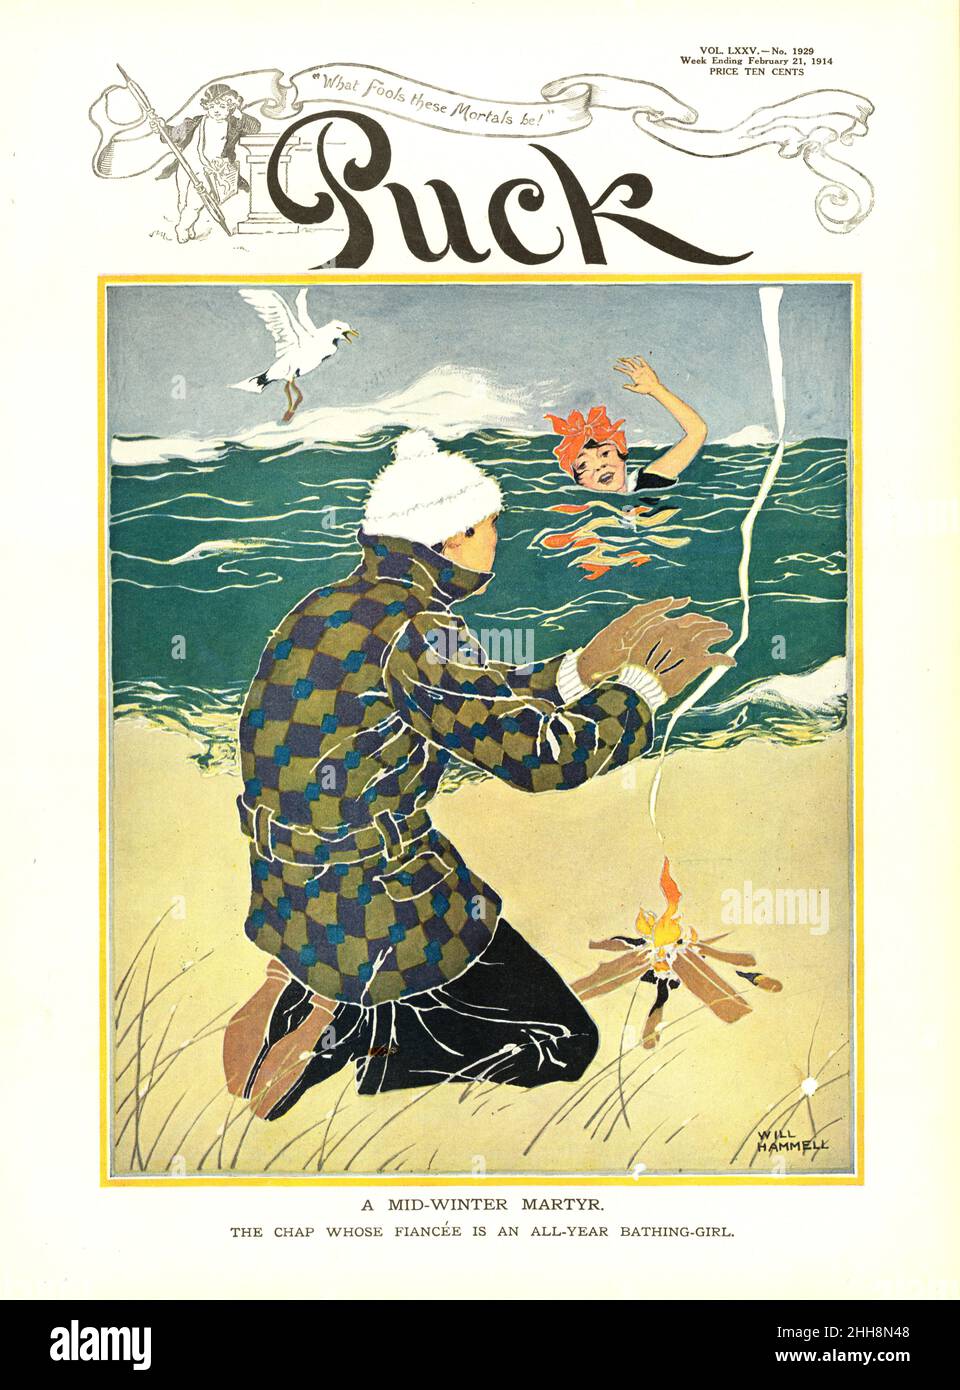 Will Hammell - Un Martire di metà inverno - copertina anteriore della rivista Puck - 1914 Foto Stock